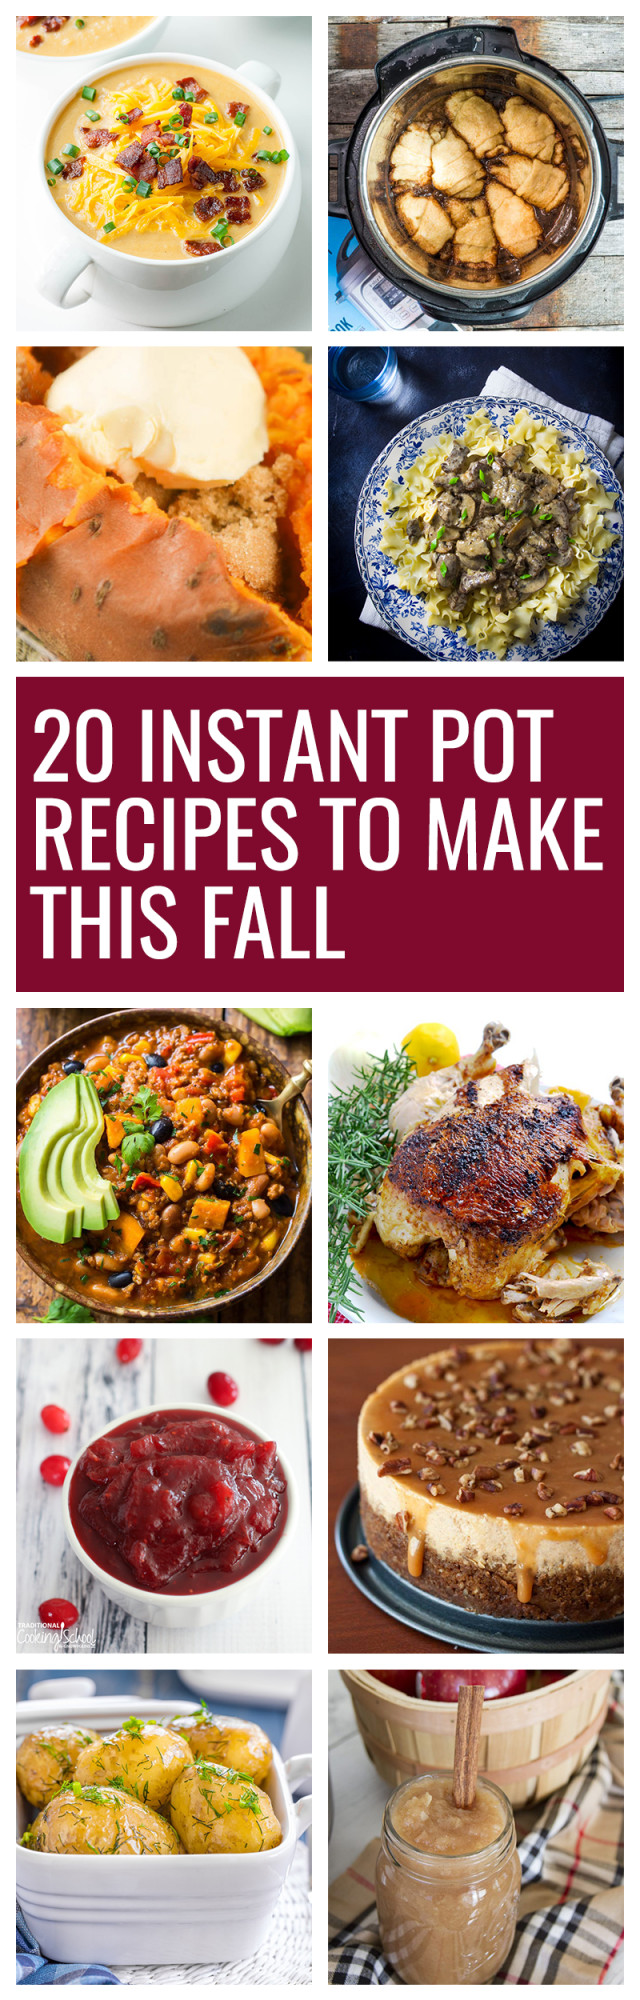 Instant Pot Fall Recipes
 20 Fall Instant Pot Recipes